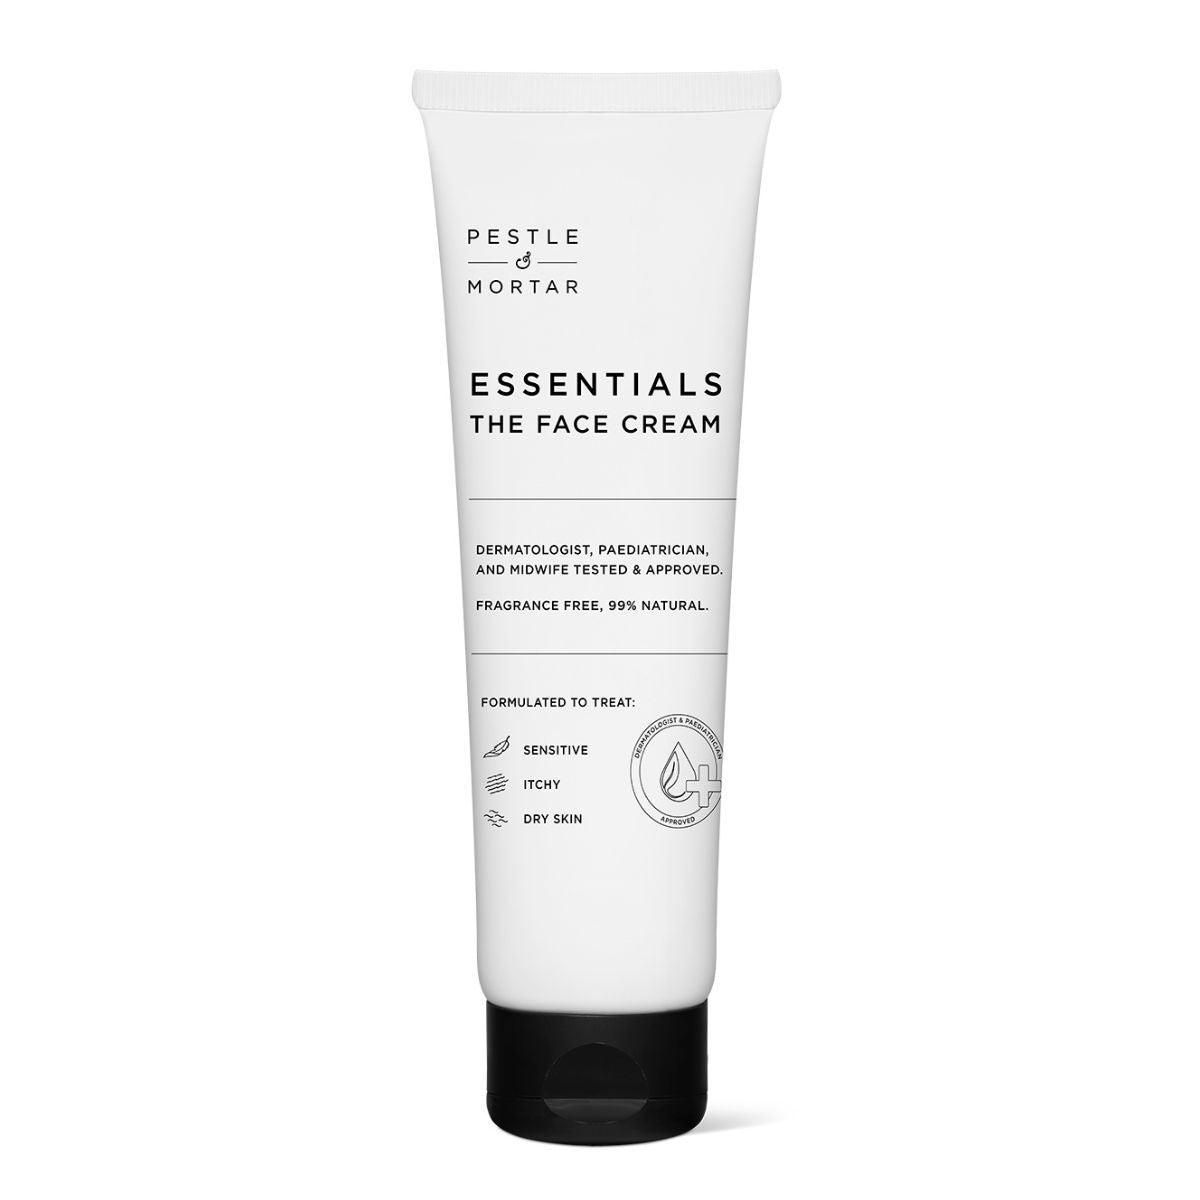 Pestle & Mortar Essentials The Face Cream